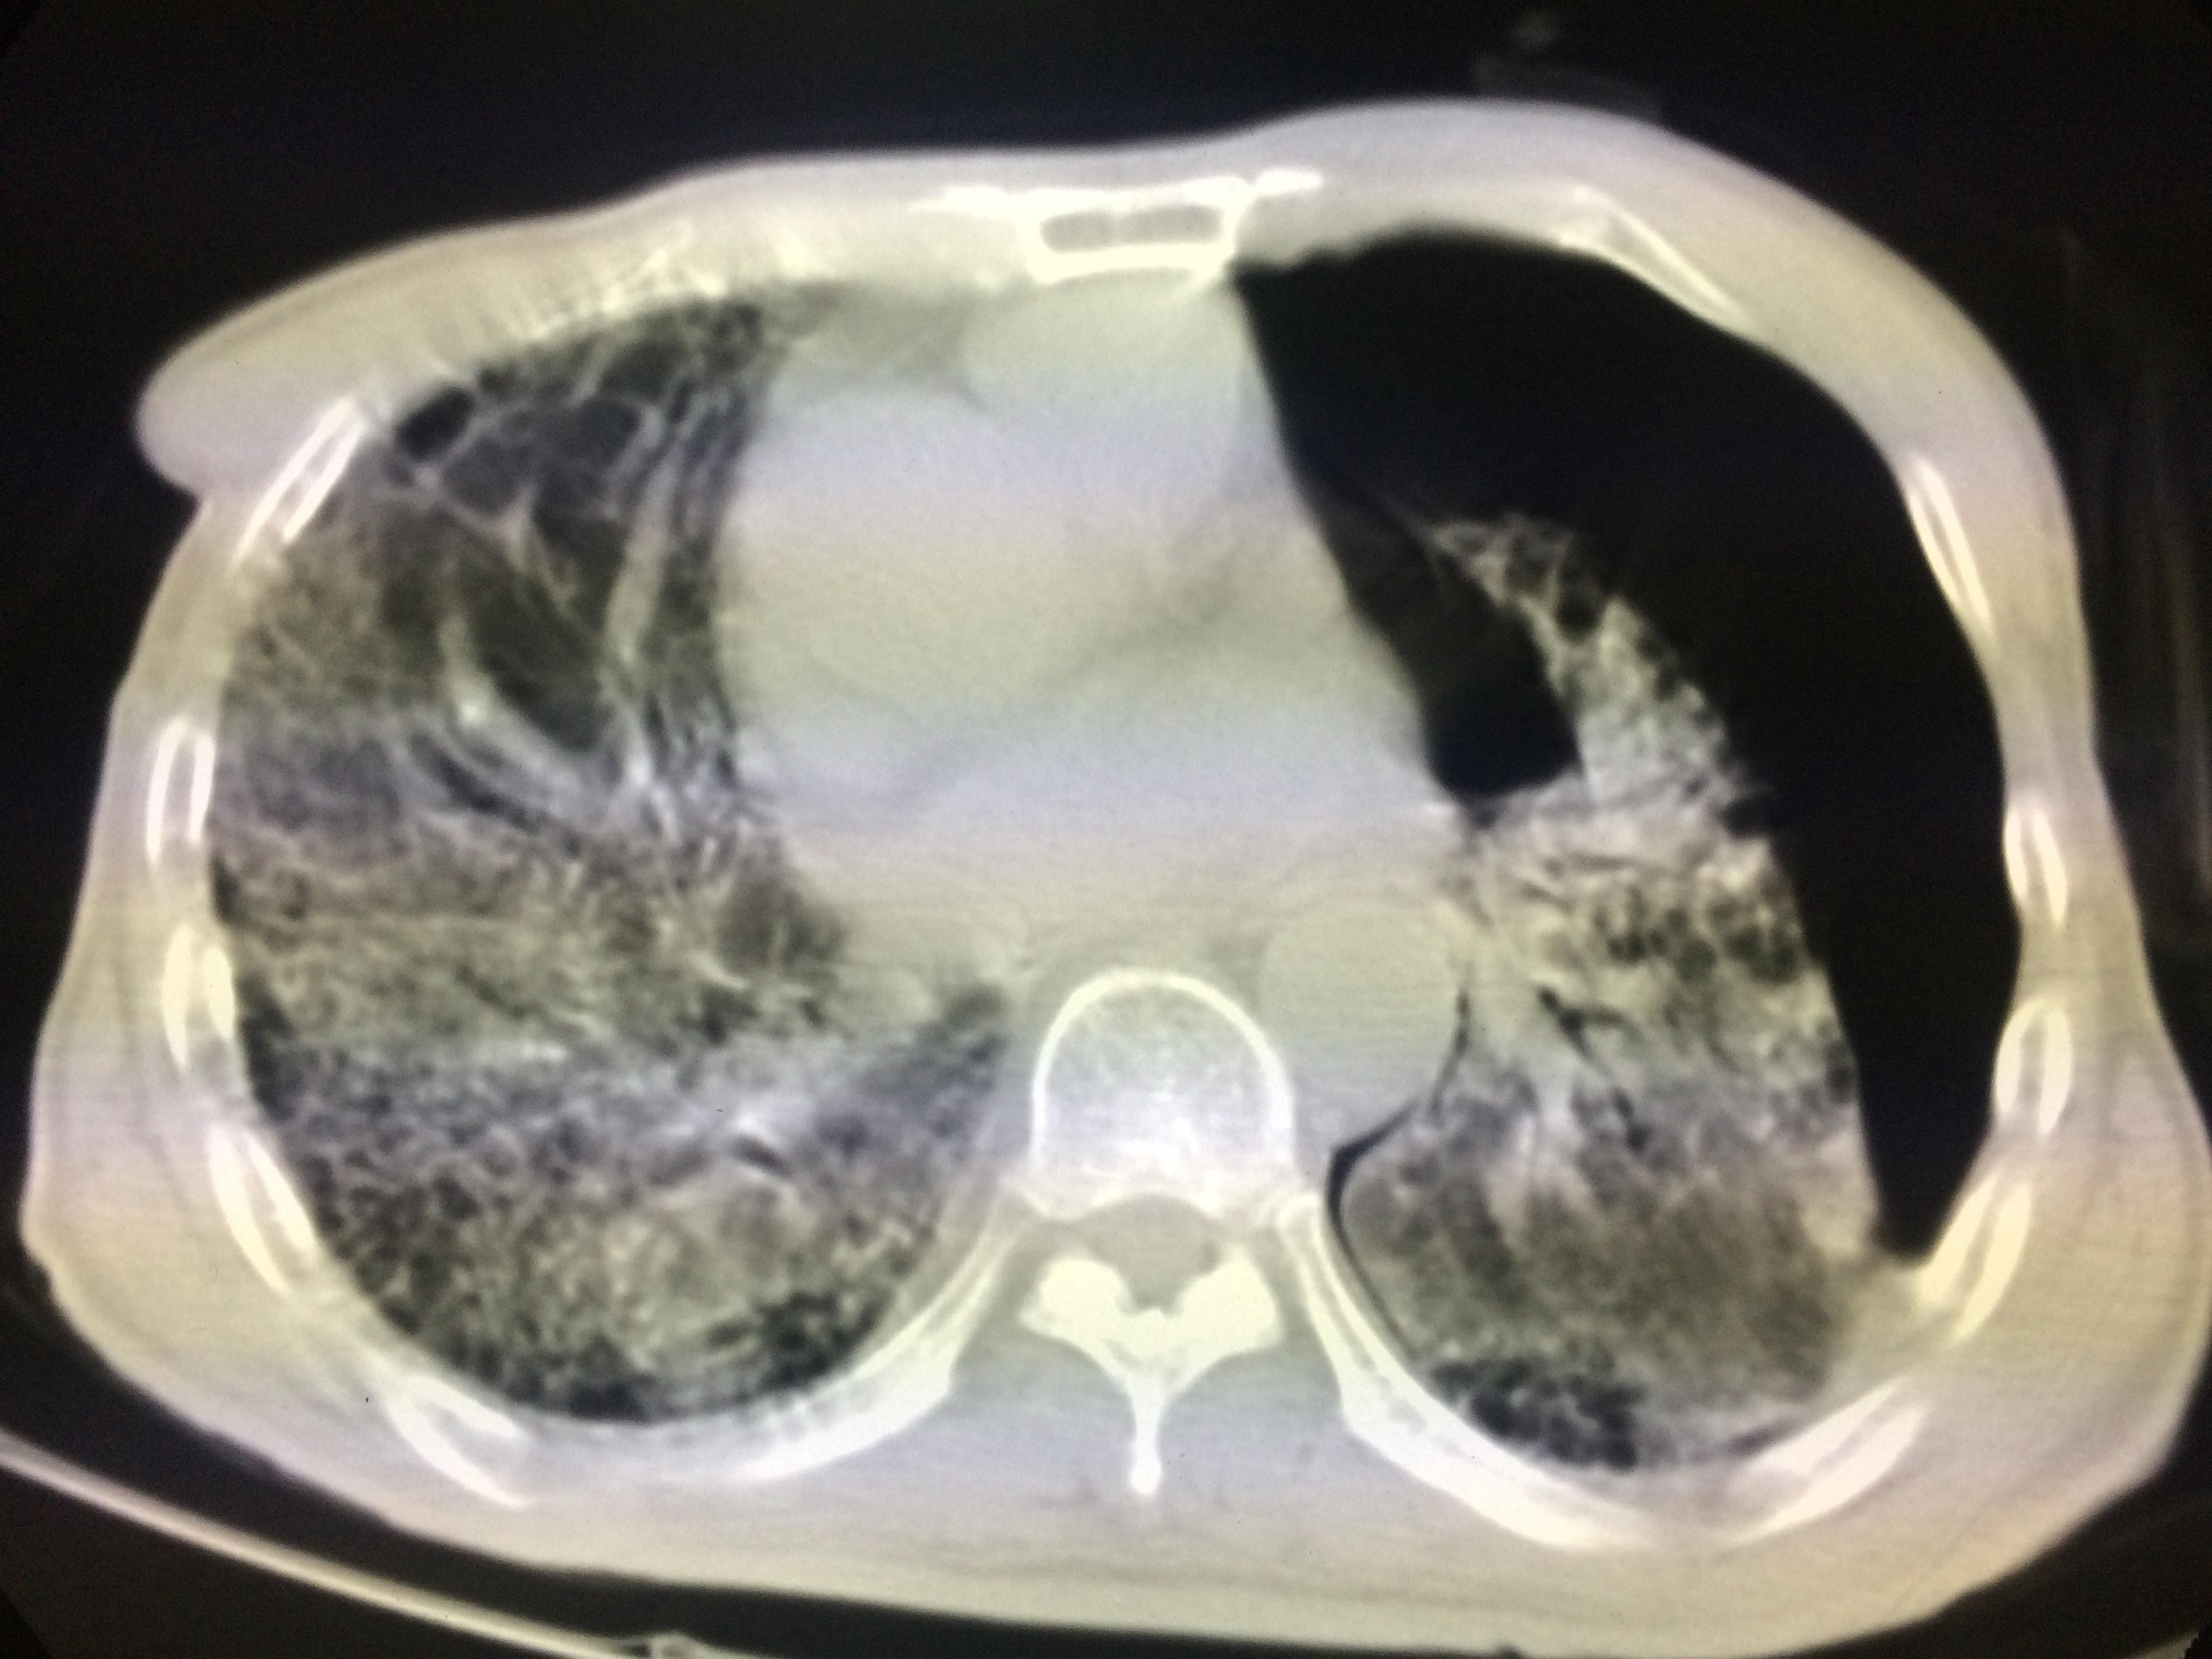 肺纤维化图片_肺纤维化症状表现图片大全_有来医生